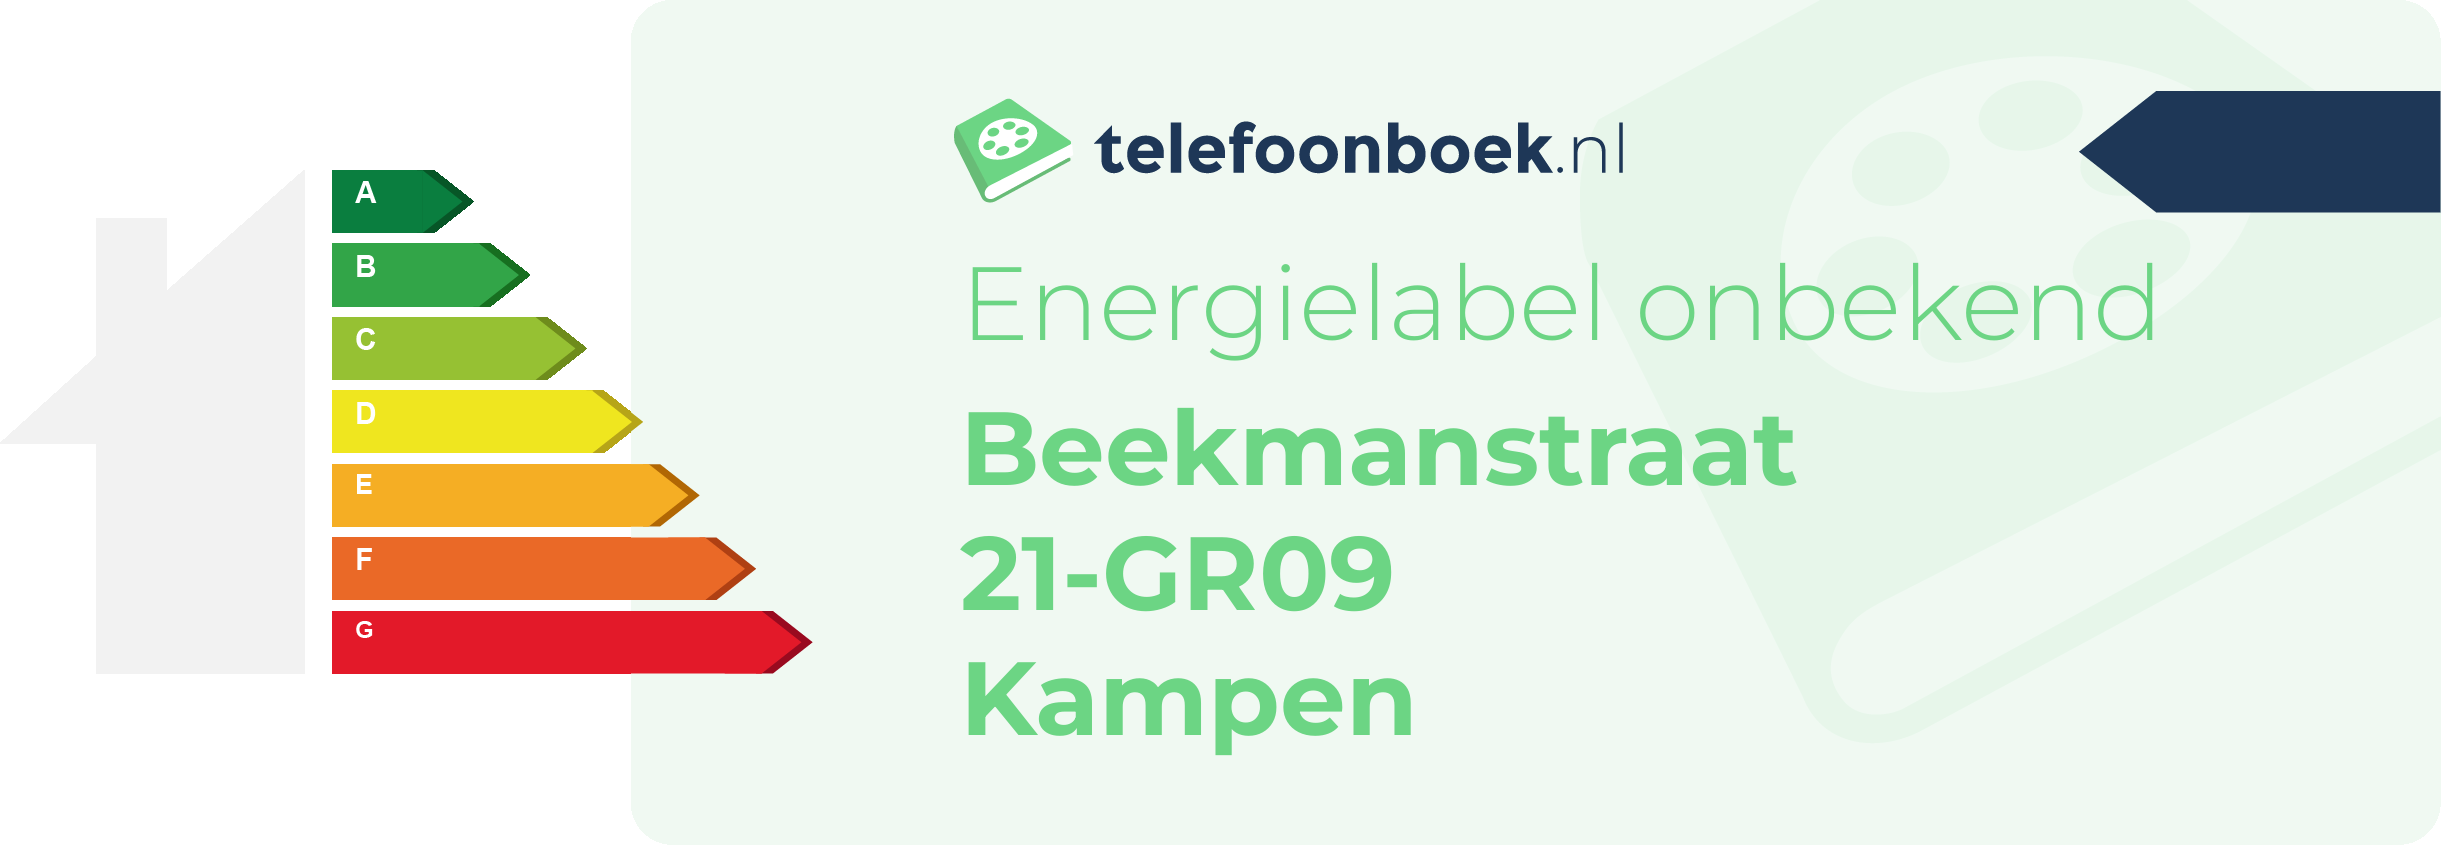 Energielabel Beekmanstraat 21-GR09 Kampen